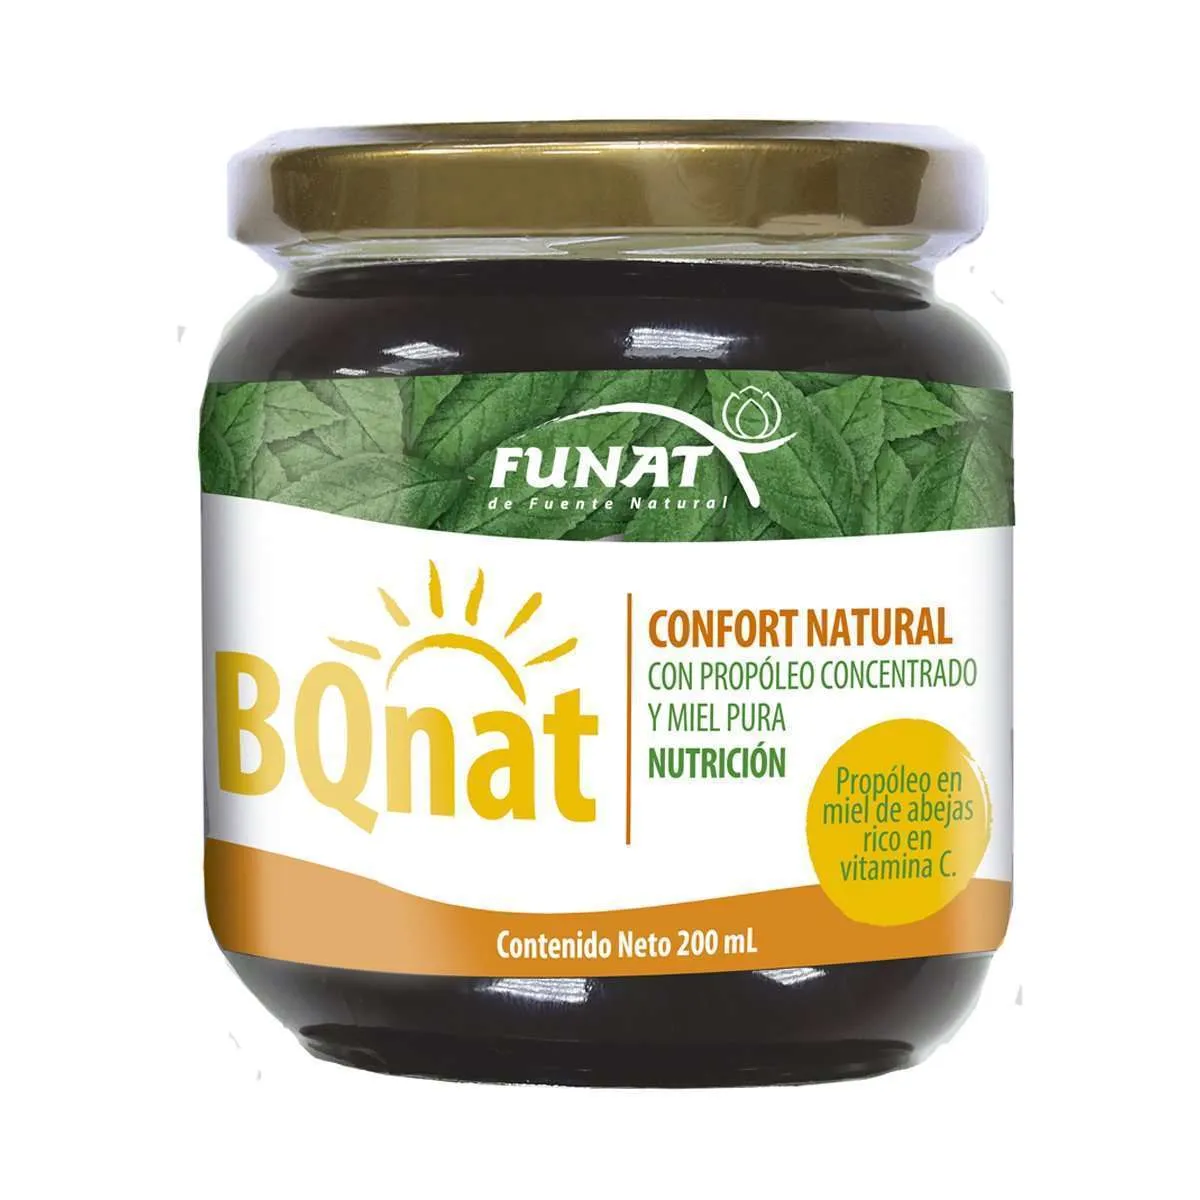 BQnat propóleo en miel 200 ml - Frente del empaque - Funat